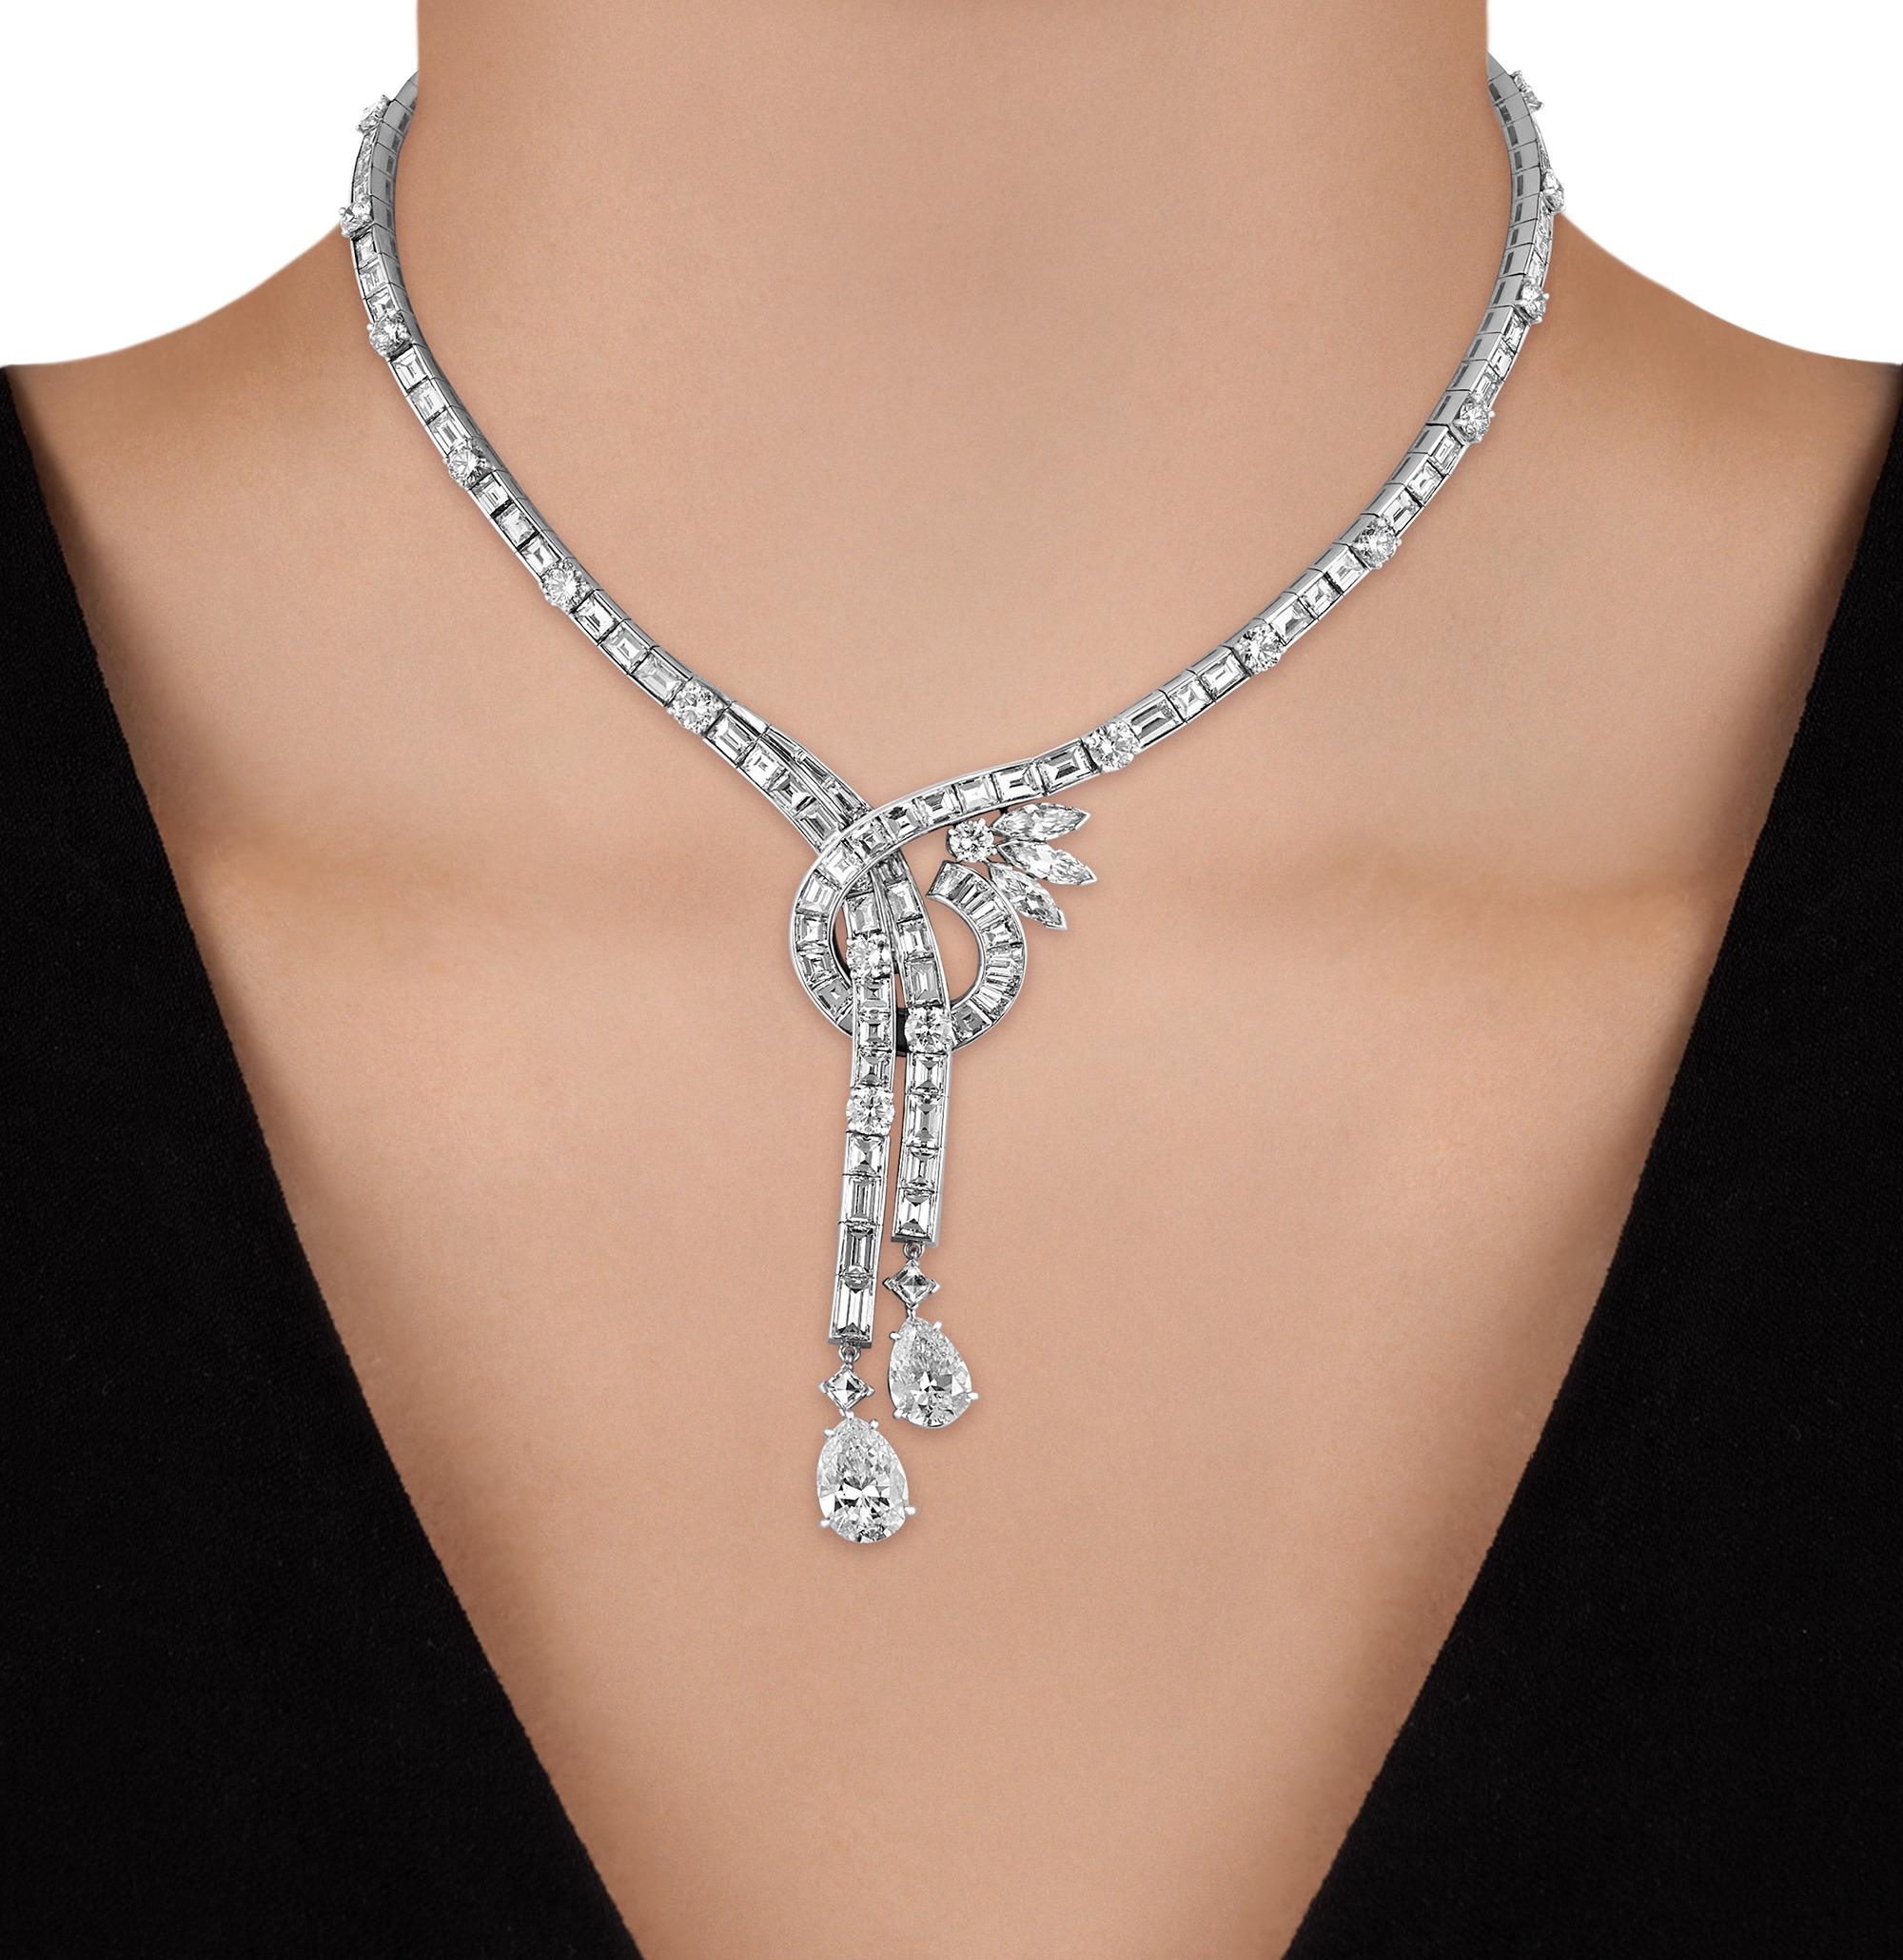 Ce superbe collier de style lariat respire l'élégance romantique et brille de 36,77 carats de diamants blancs. La courbe délicate du collier est constellée d'un magnifique ensemble de diamants de taille mixte, culminant avec deux exquis diamants en